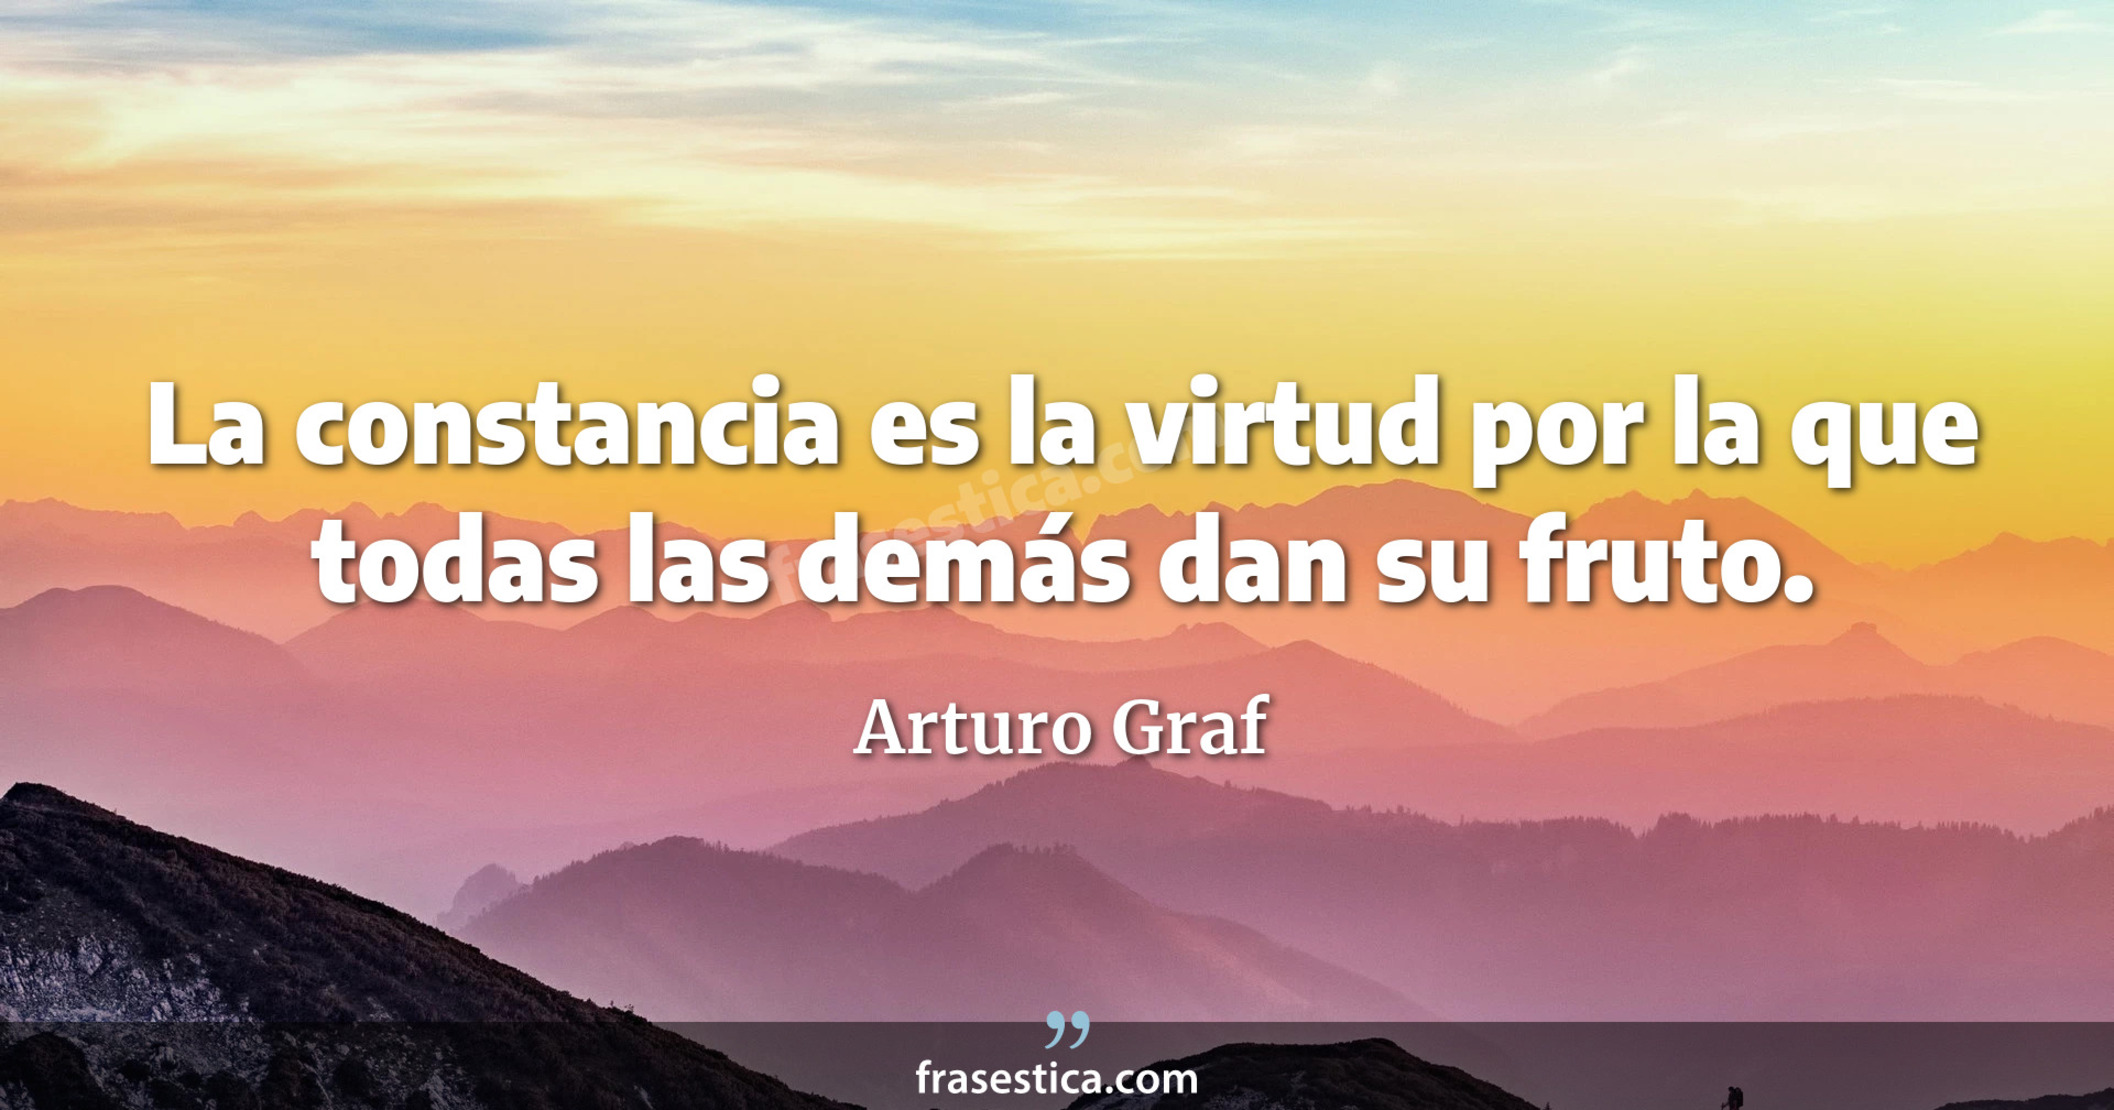 La constancia es la virtud por la que todas las demás dan su fruto. - Arturo Graf